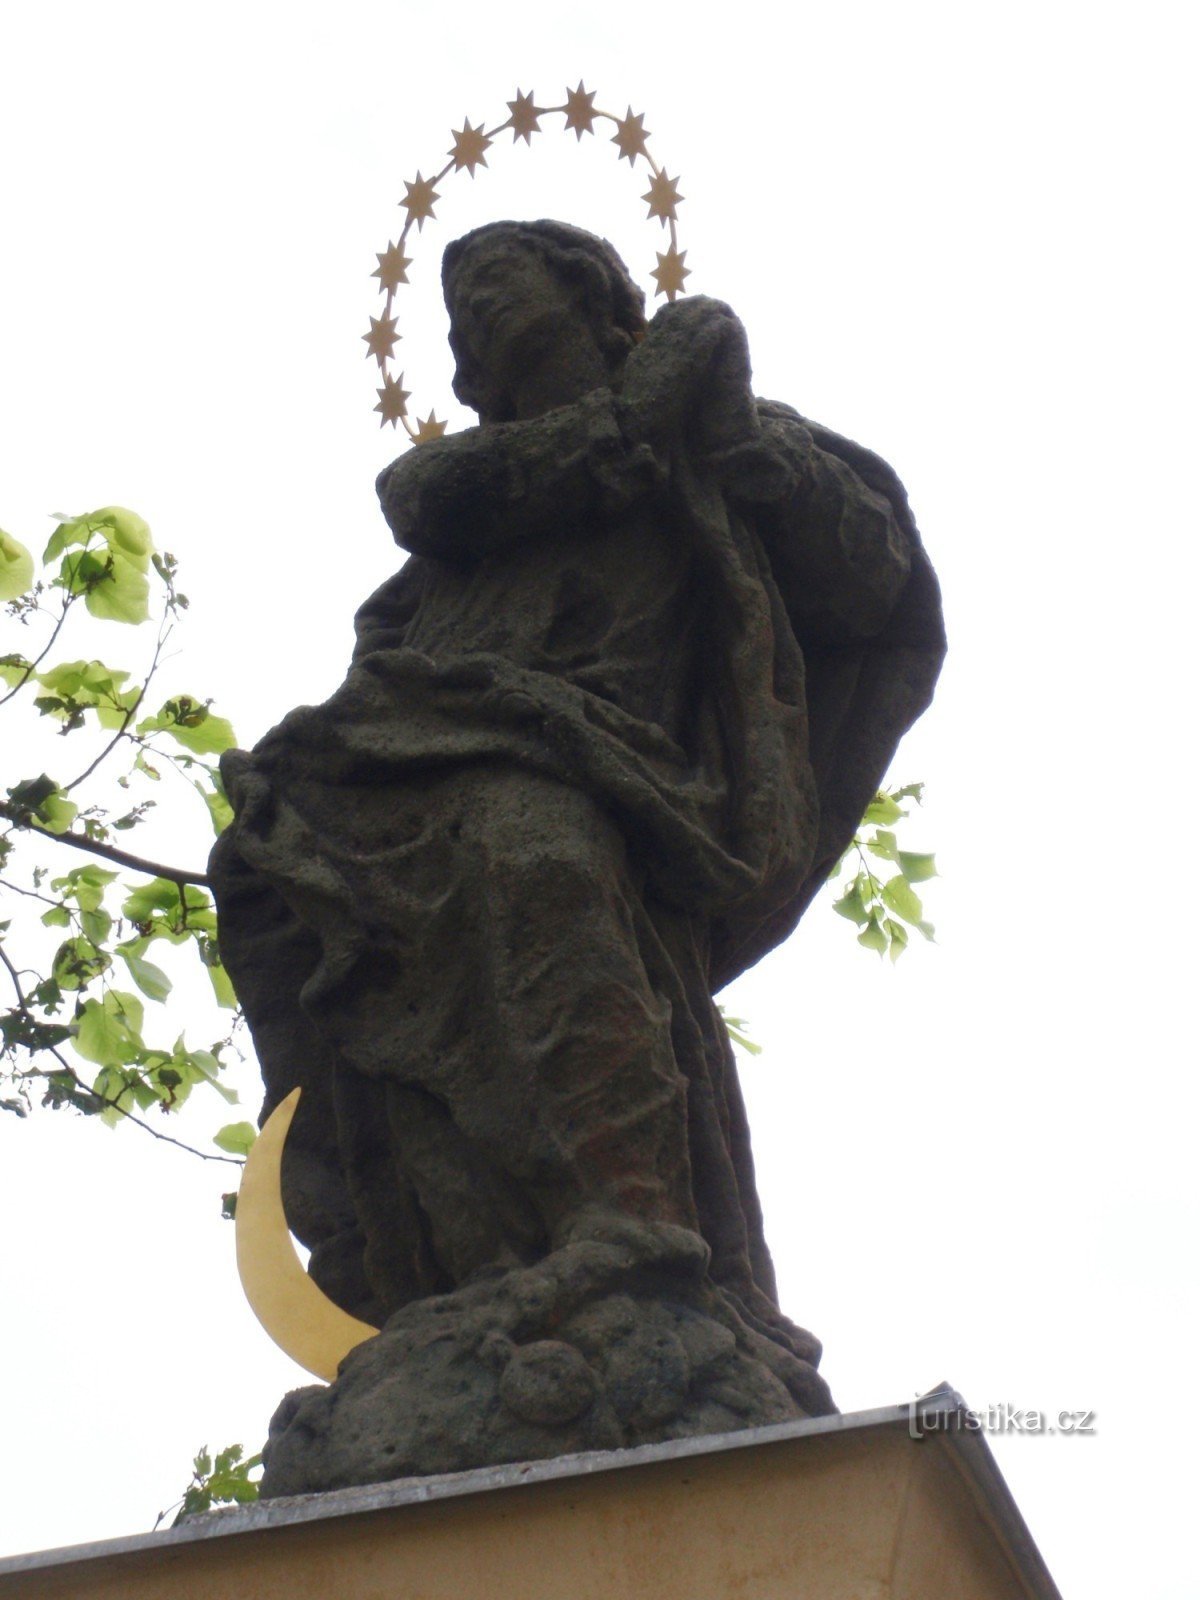 Непорочная статуя в Осовой Битышке